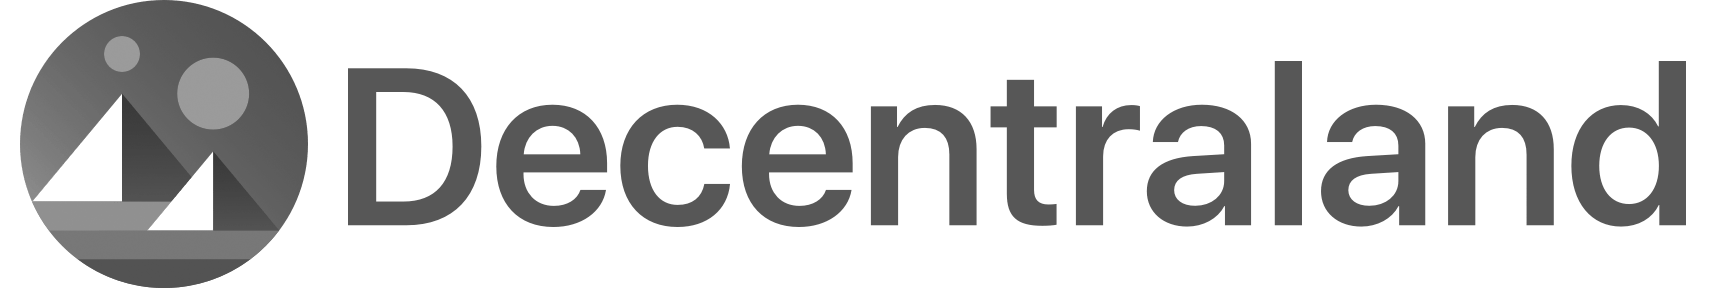 Decentraland logo